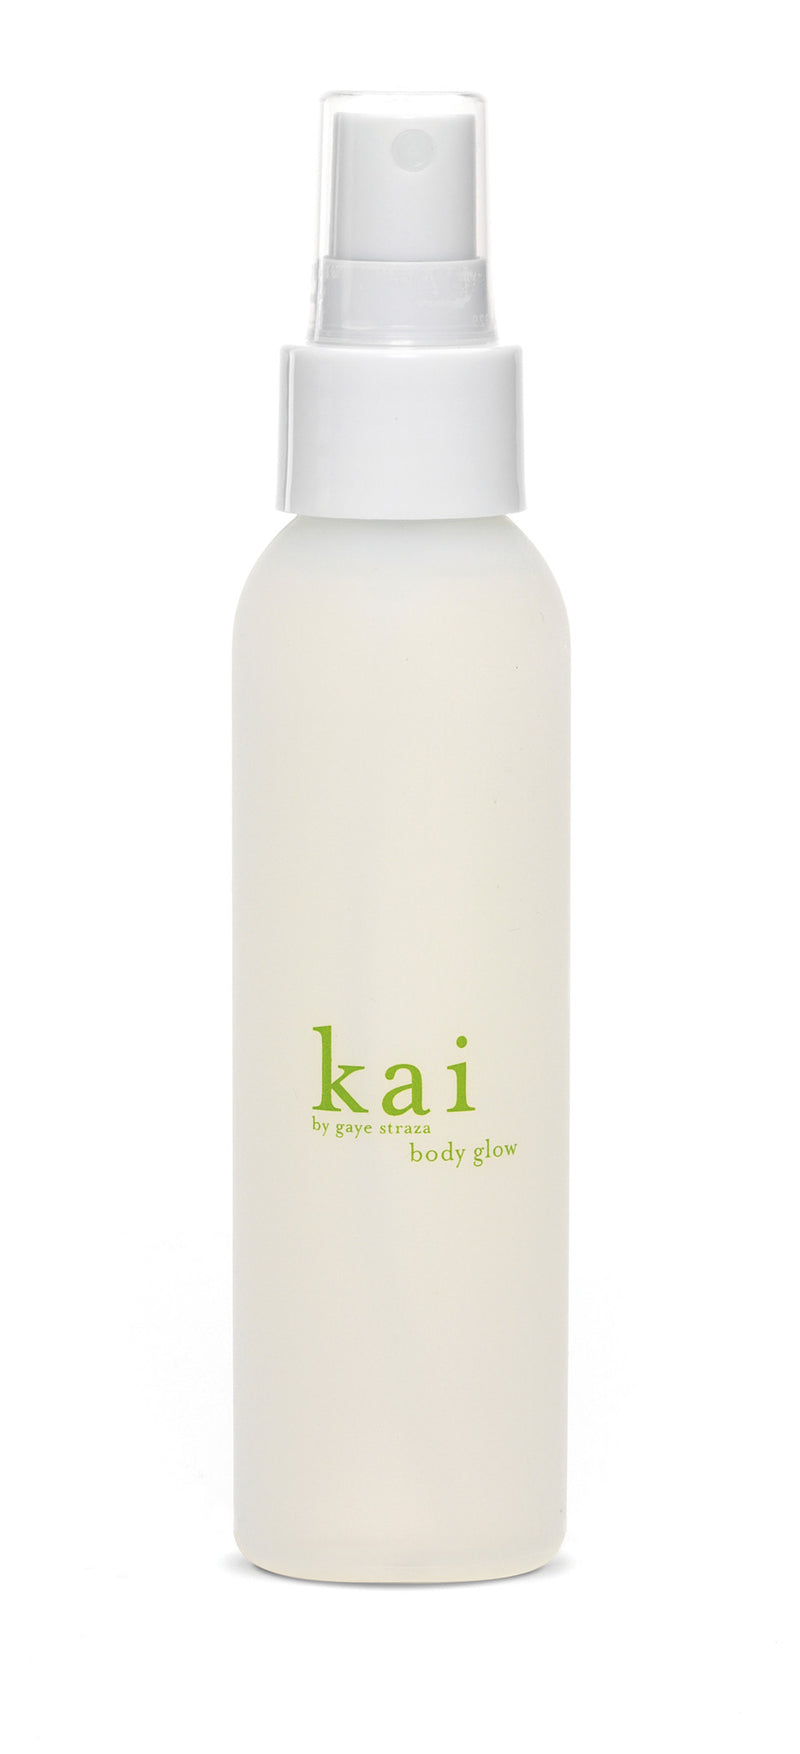 media image for kai body glow design by kai fragrance 1 224